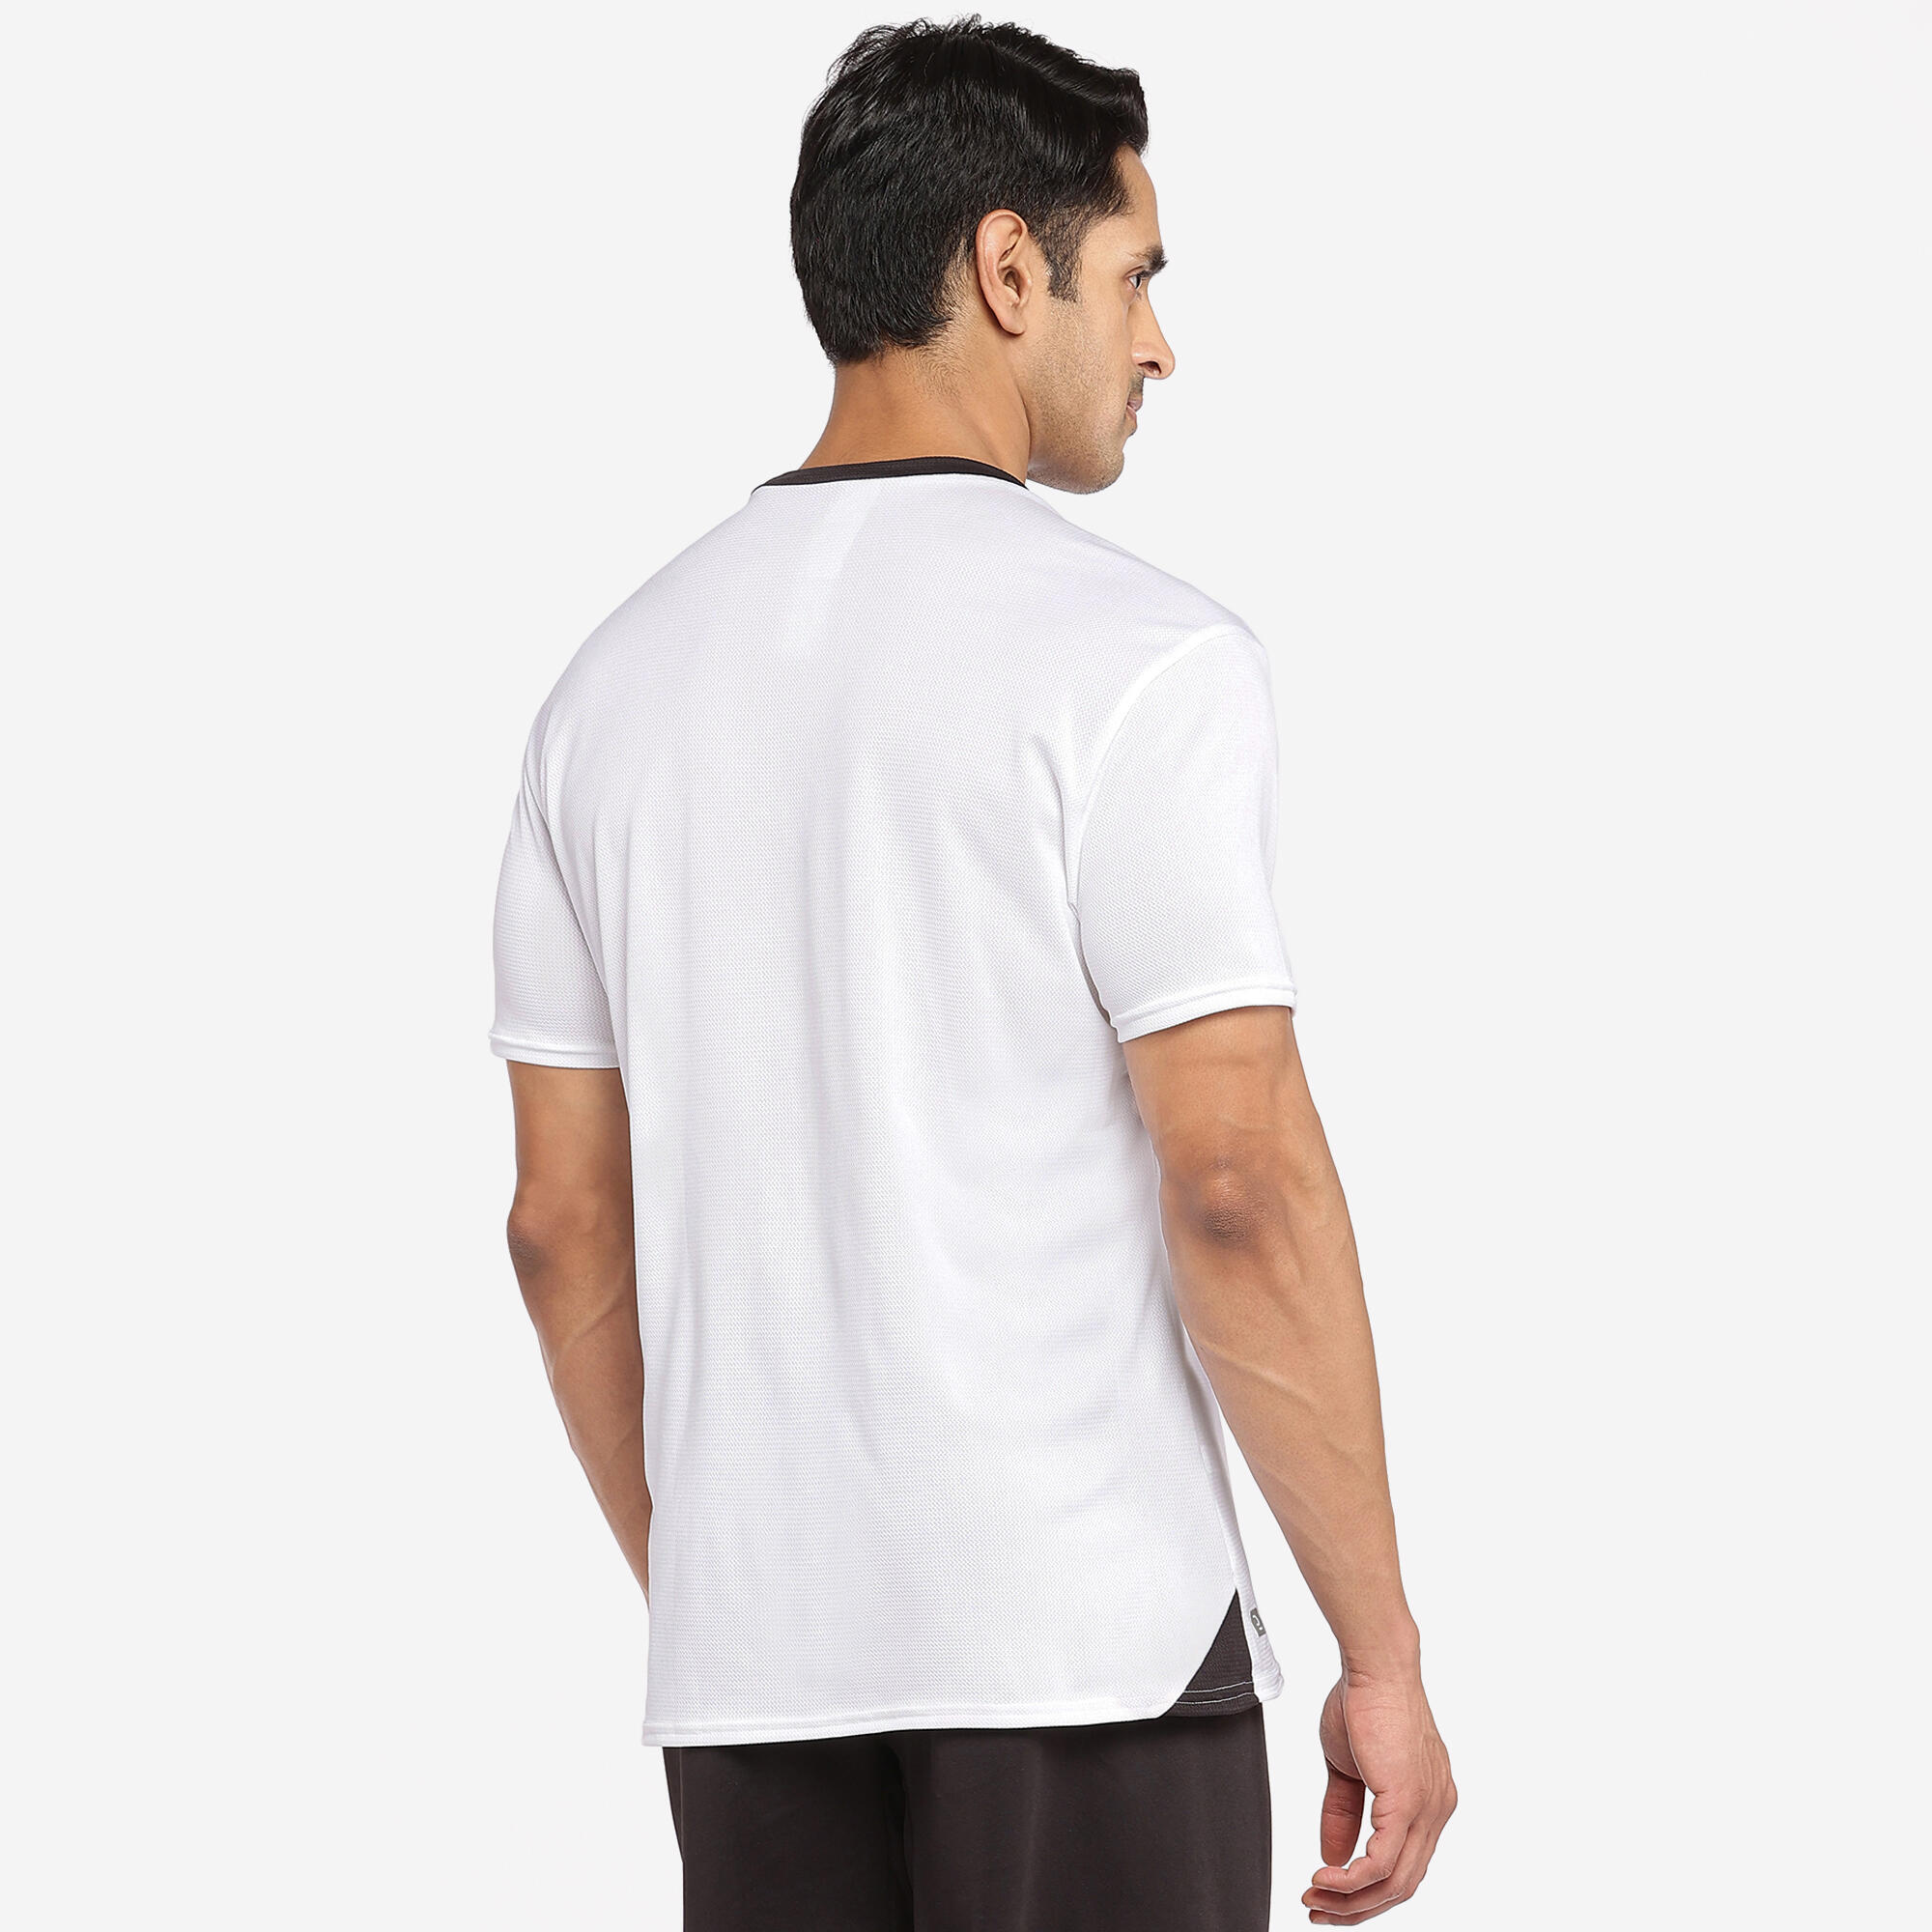 Adult Football Shirt Essential Club - White 5/29